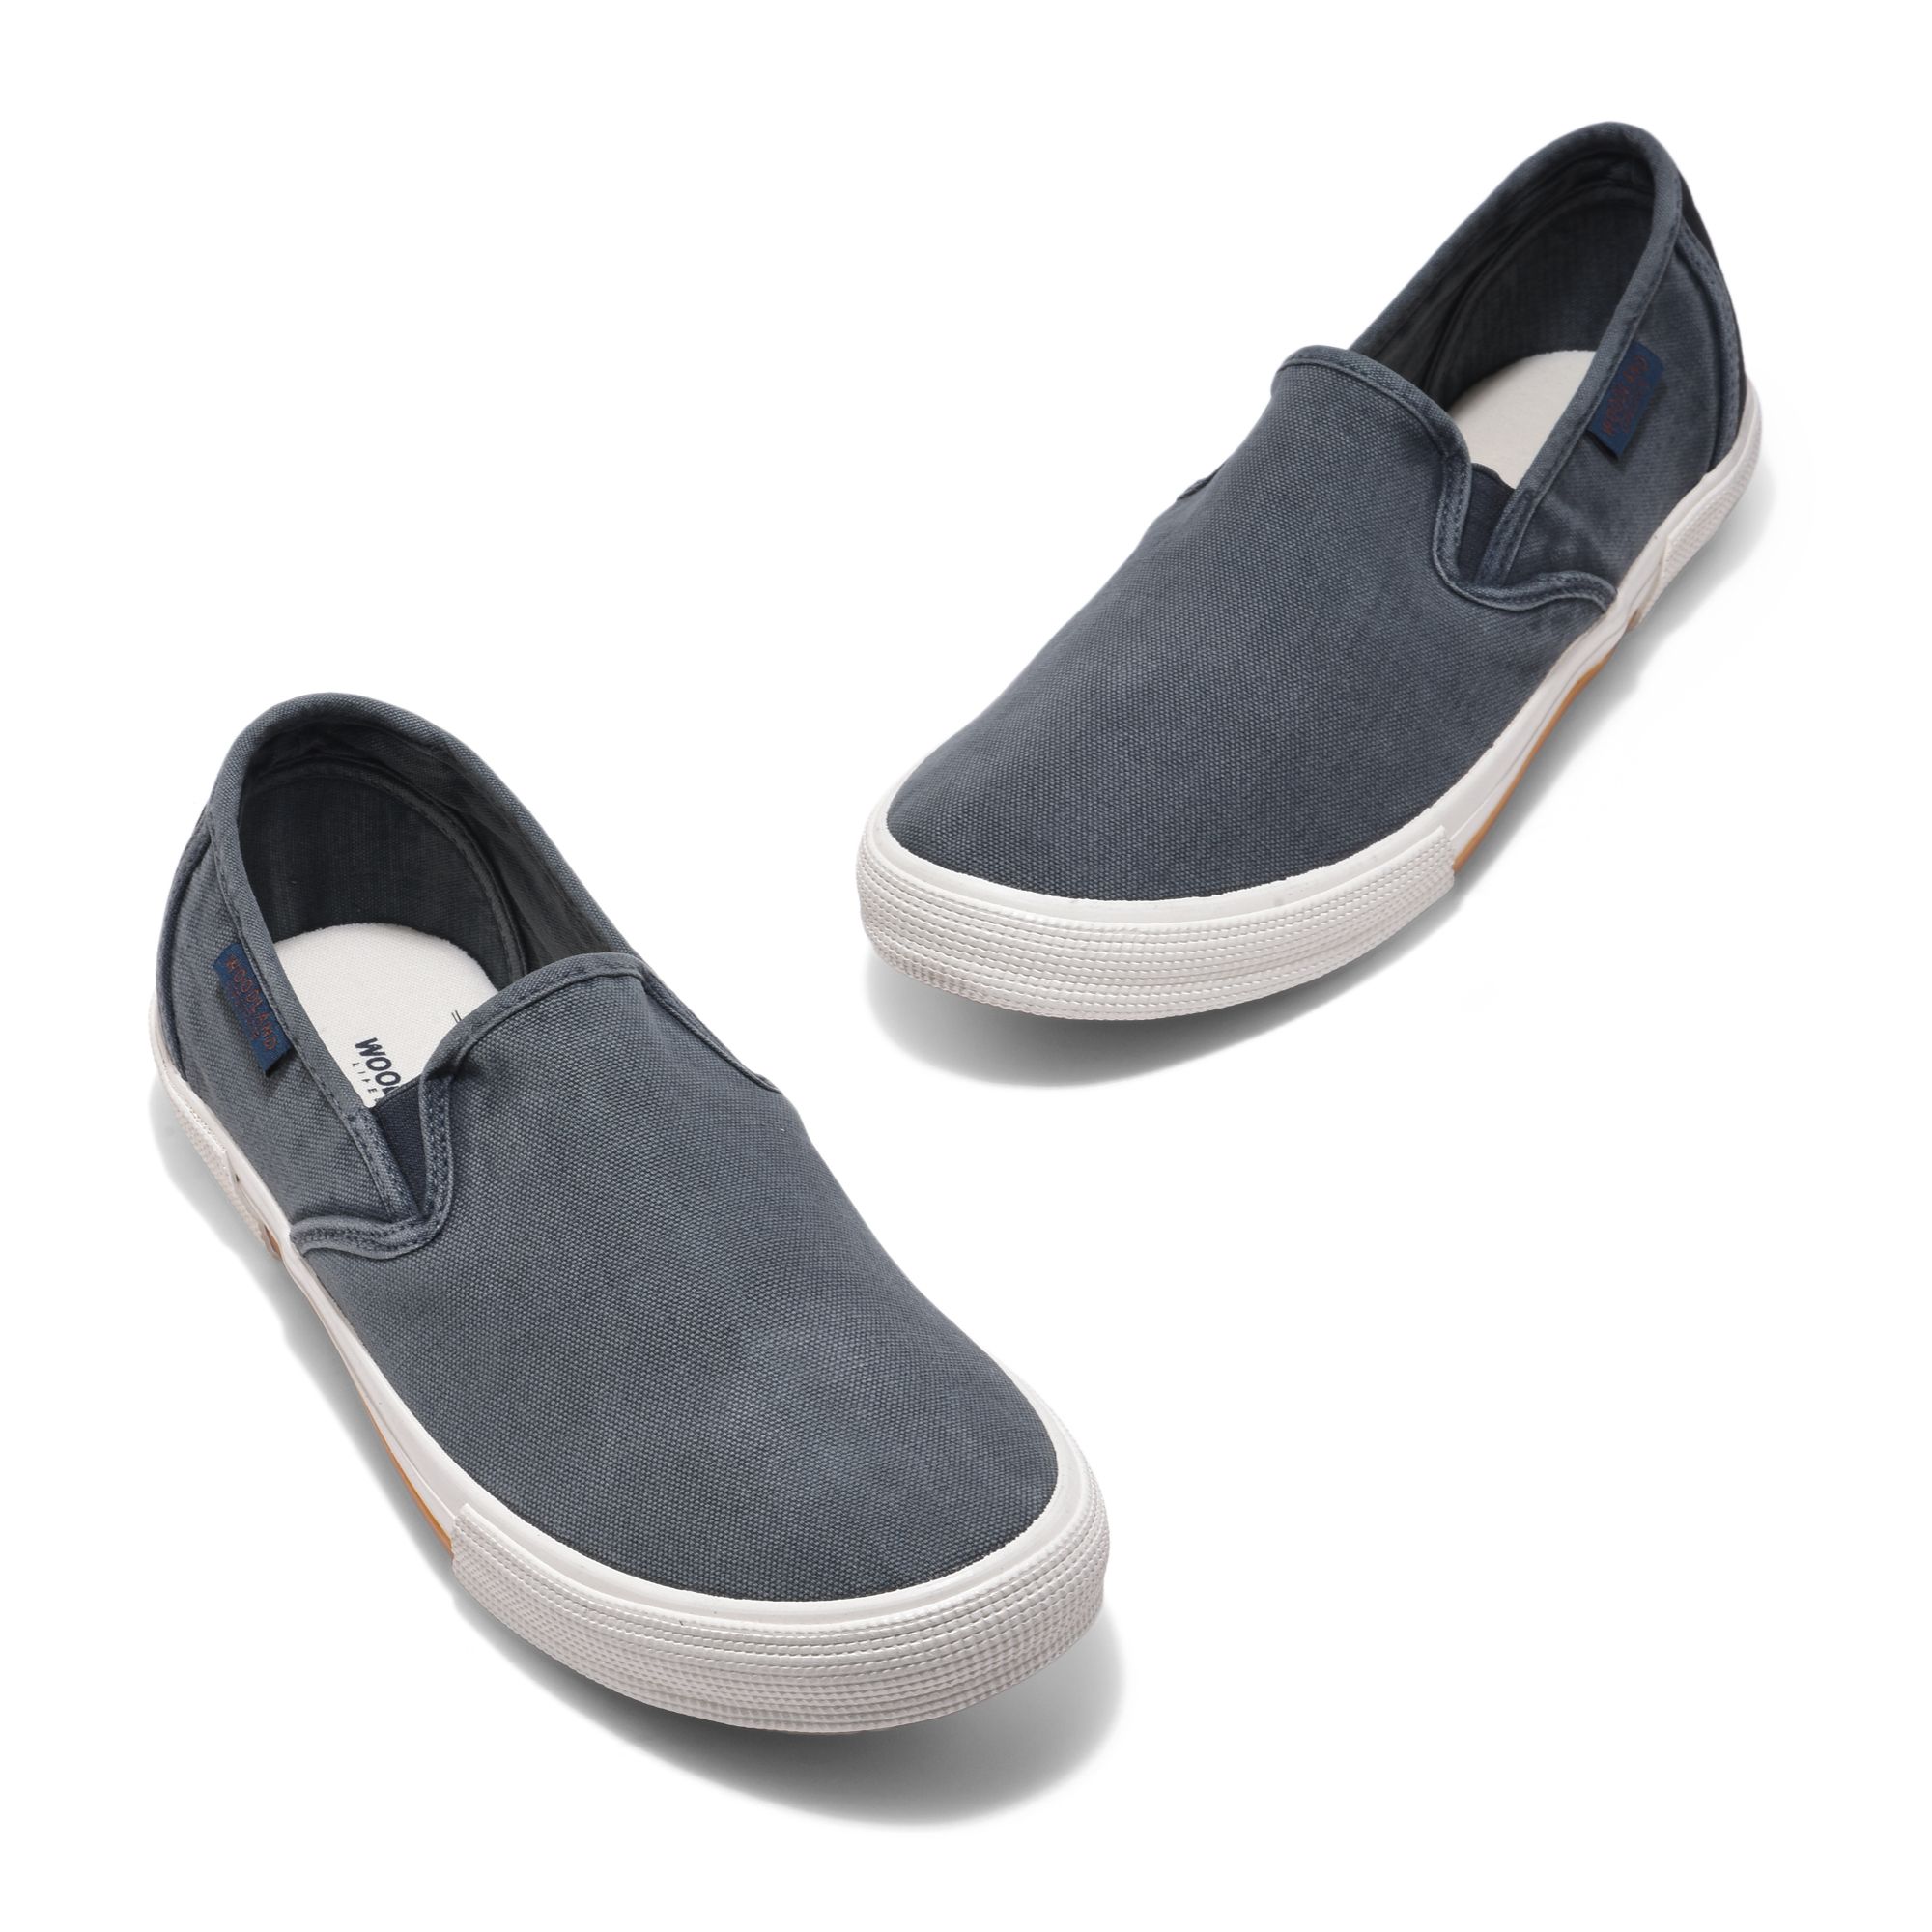 Blue Slip-on shoe for men